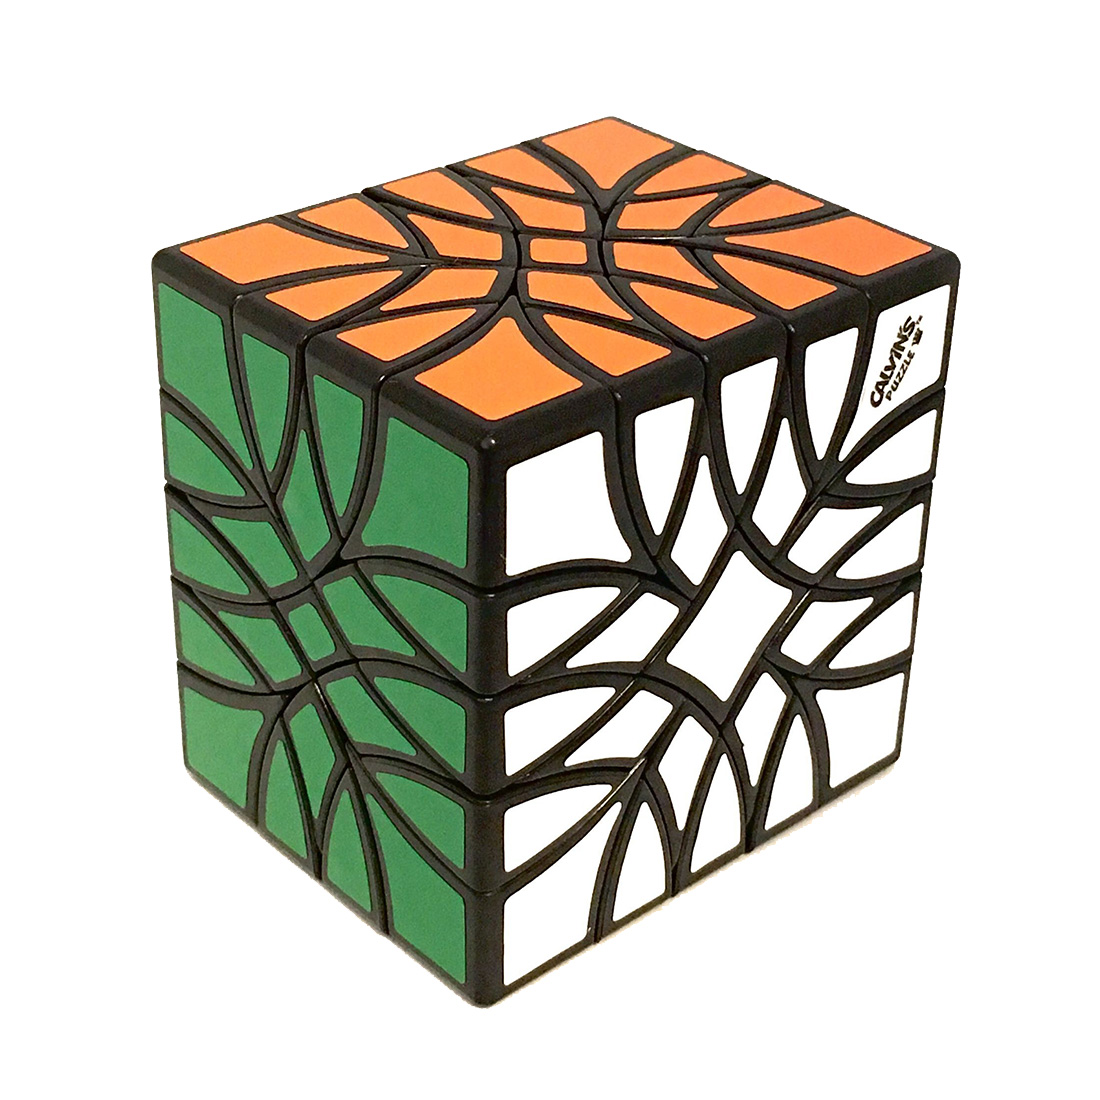 Carl's Bubbloid 5x5x4 Cube